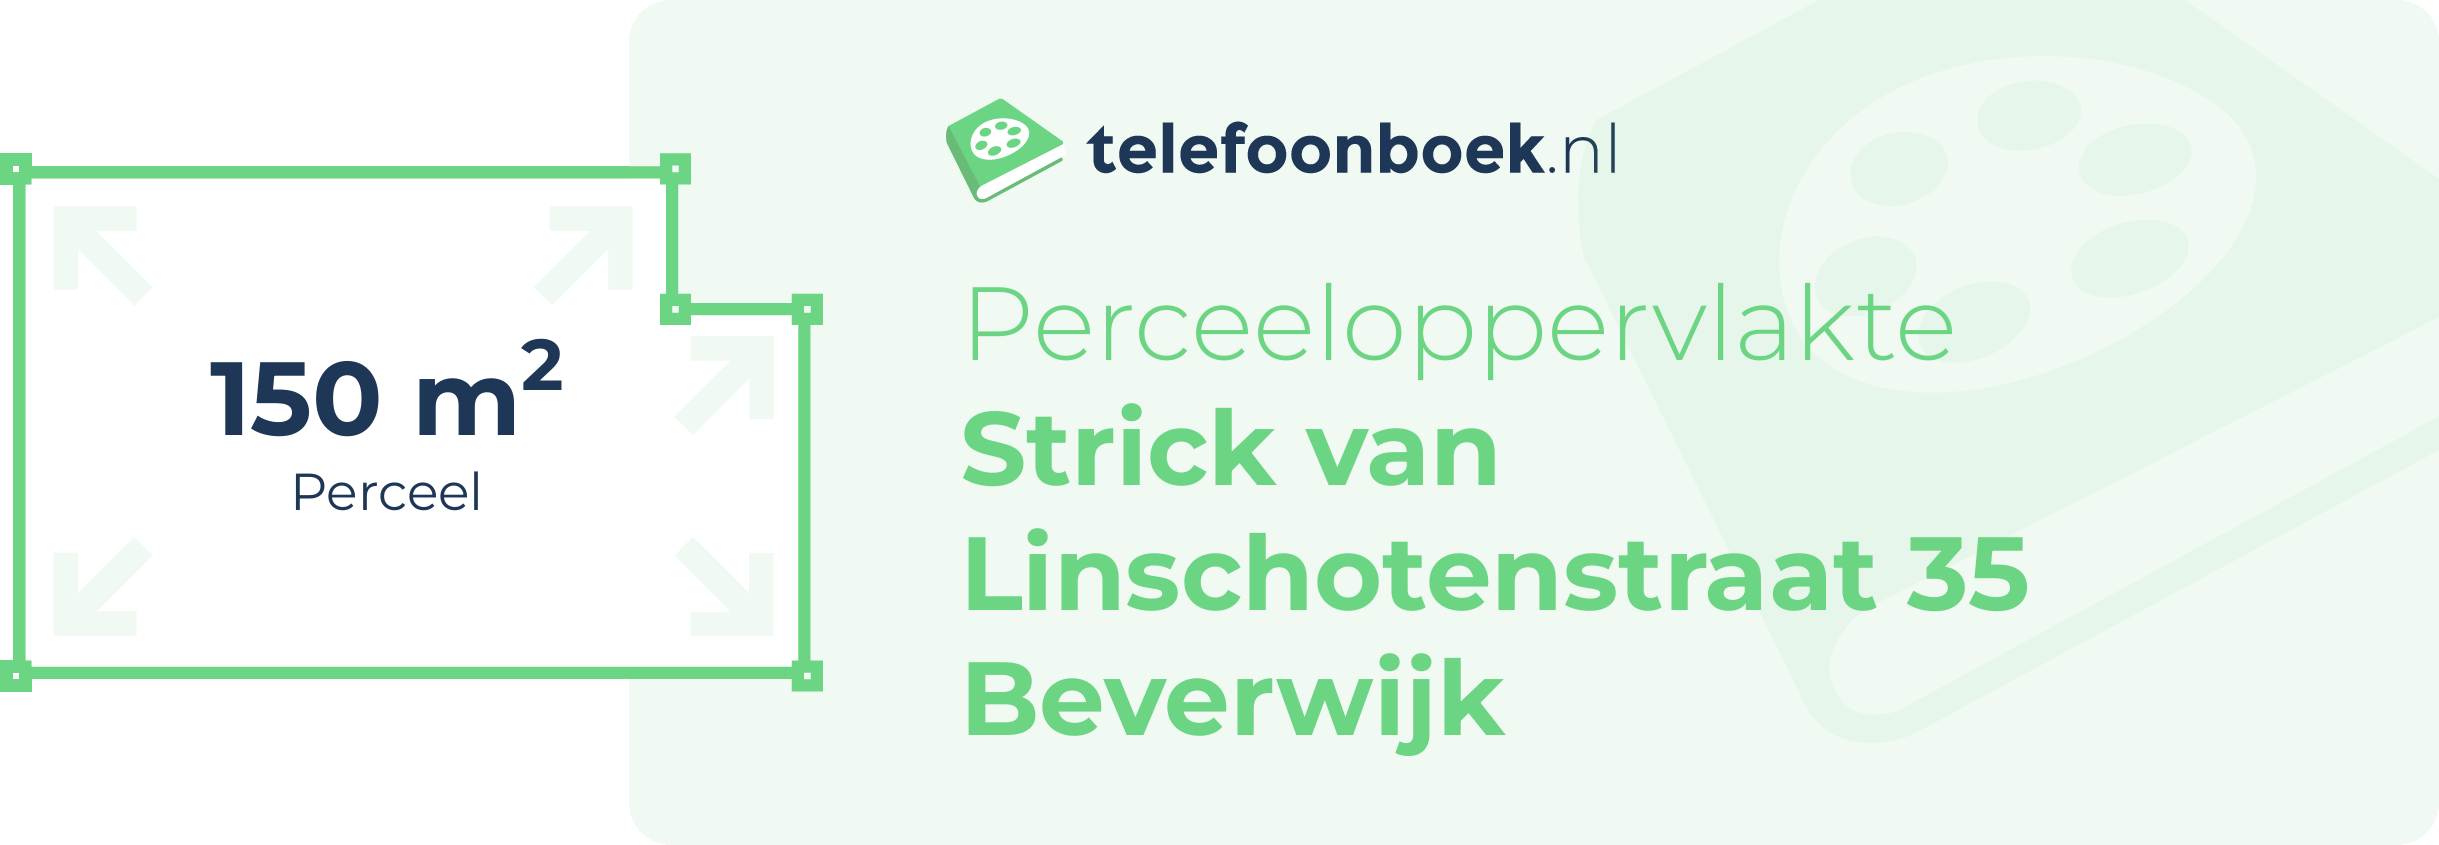 Perceeloppervlakte Strick Van Linschotenstraat 35 Beverwijk